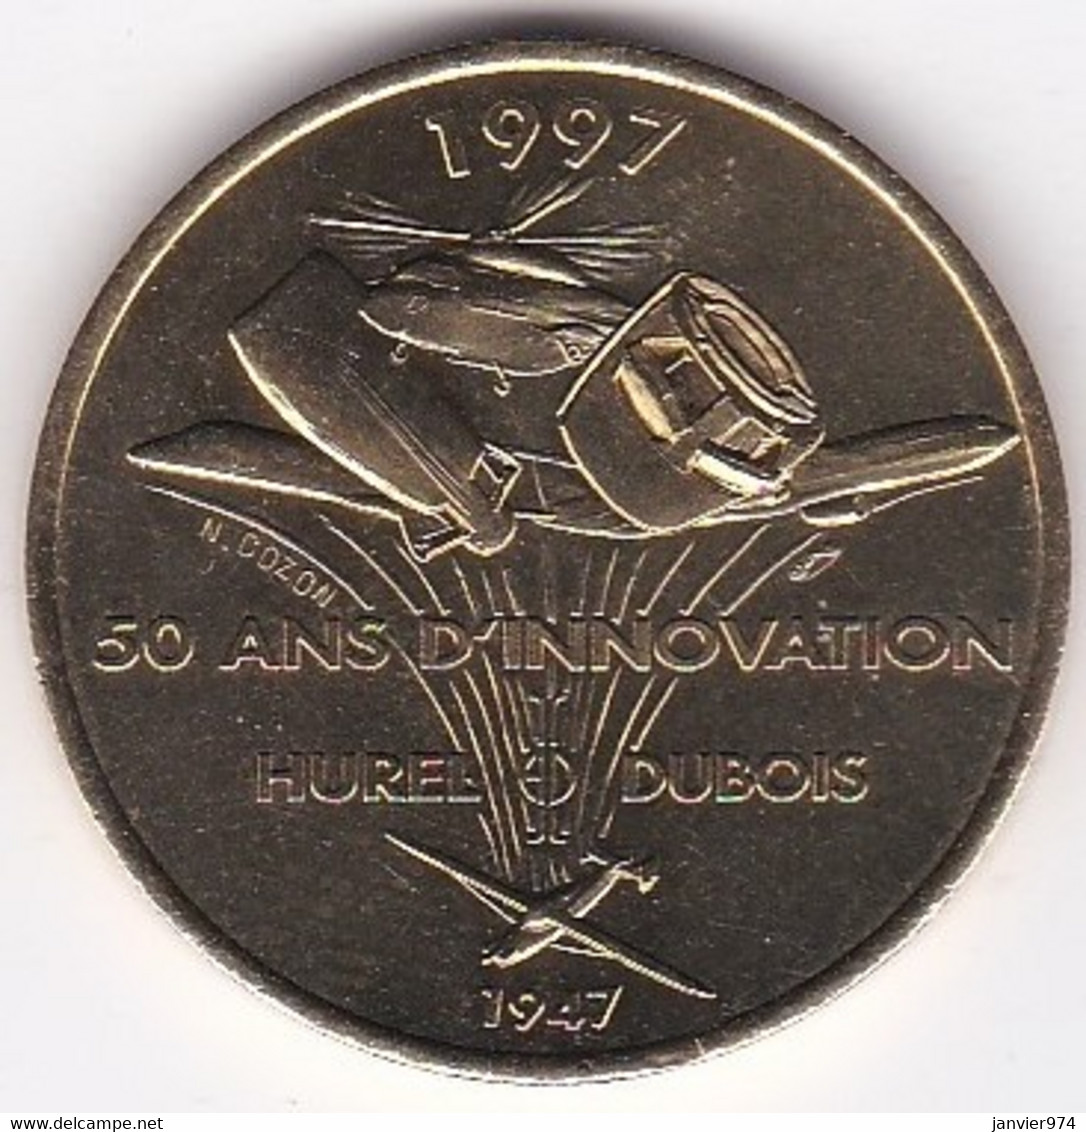 Médaille 50 Ans D’Innovation 1947 – 1997 Hurel - Dubois, Aviation, Frappée à L’occasion Du 50e Anniversaire. - Professionals / Firms